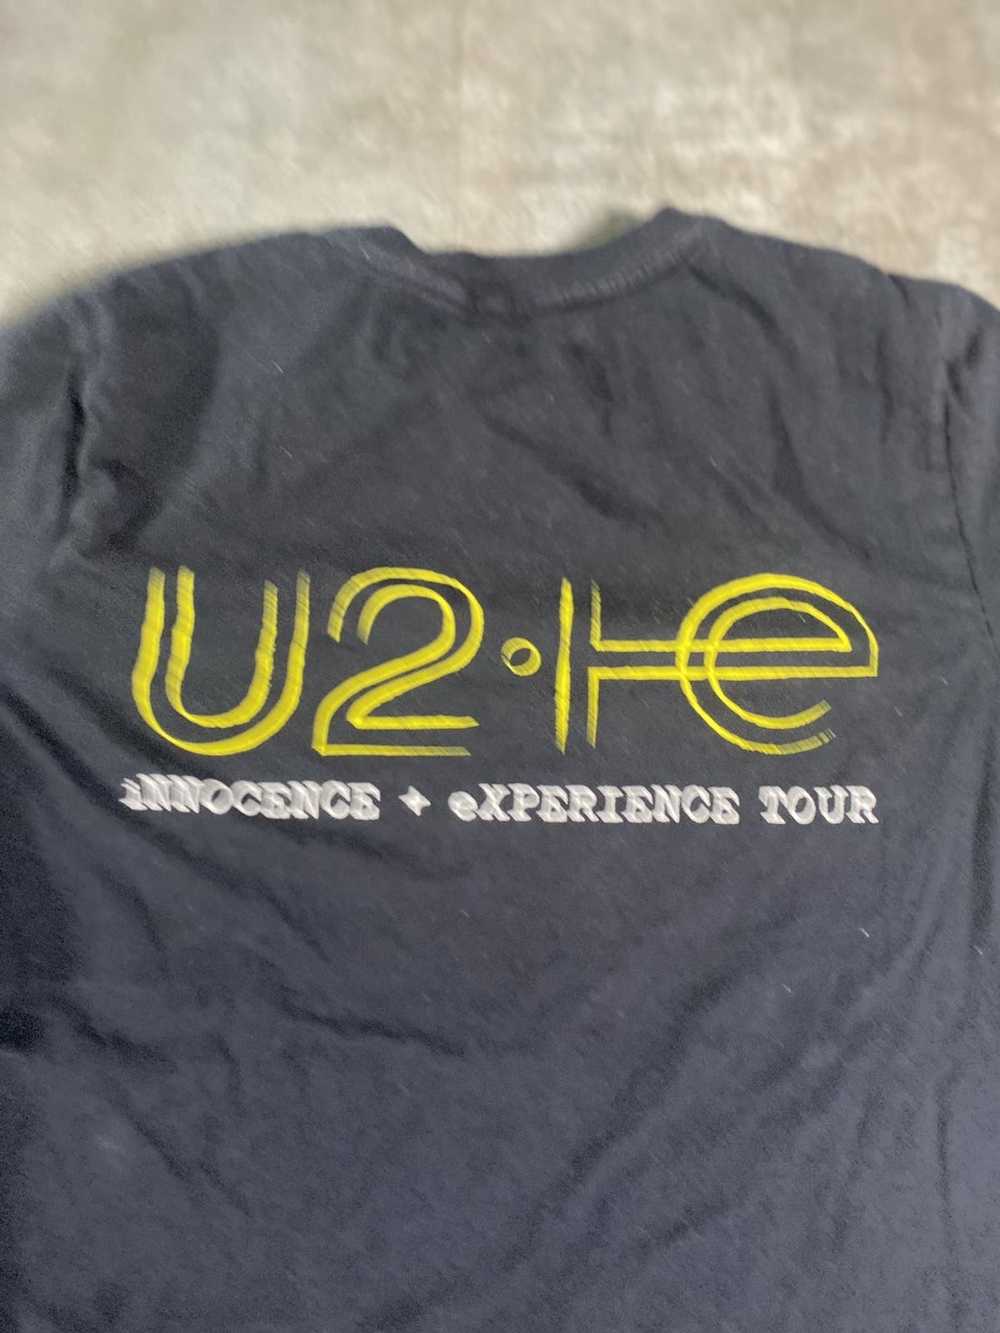 Band Tees 2013 U2 tour tee. - image 4